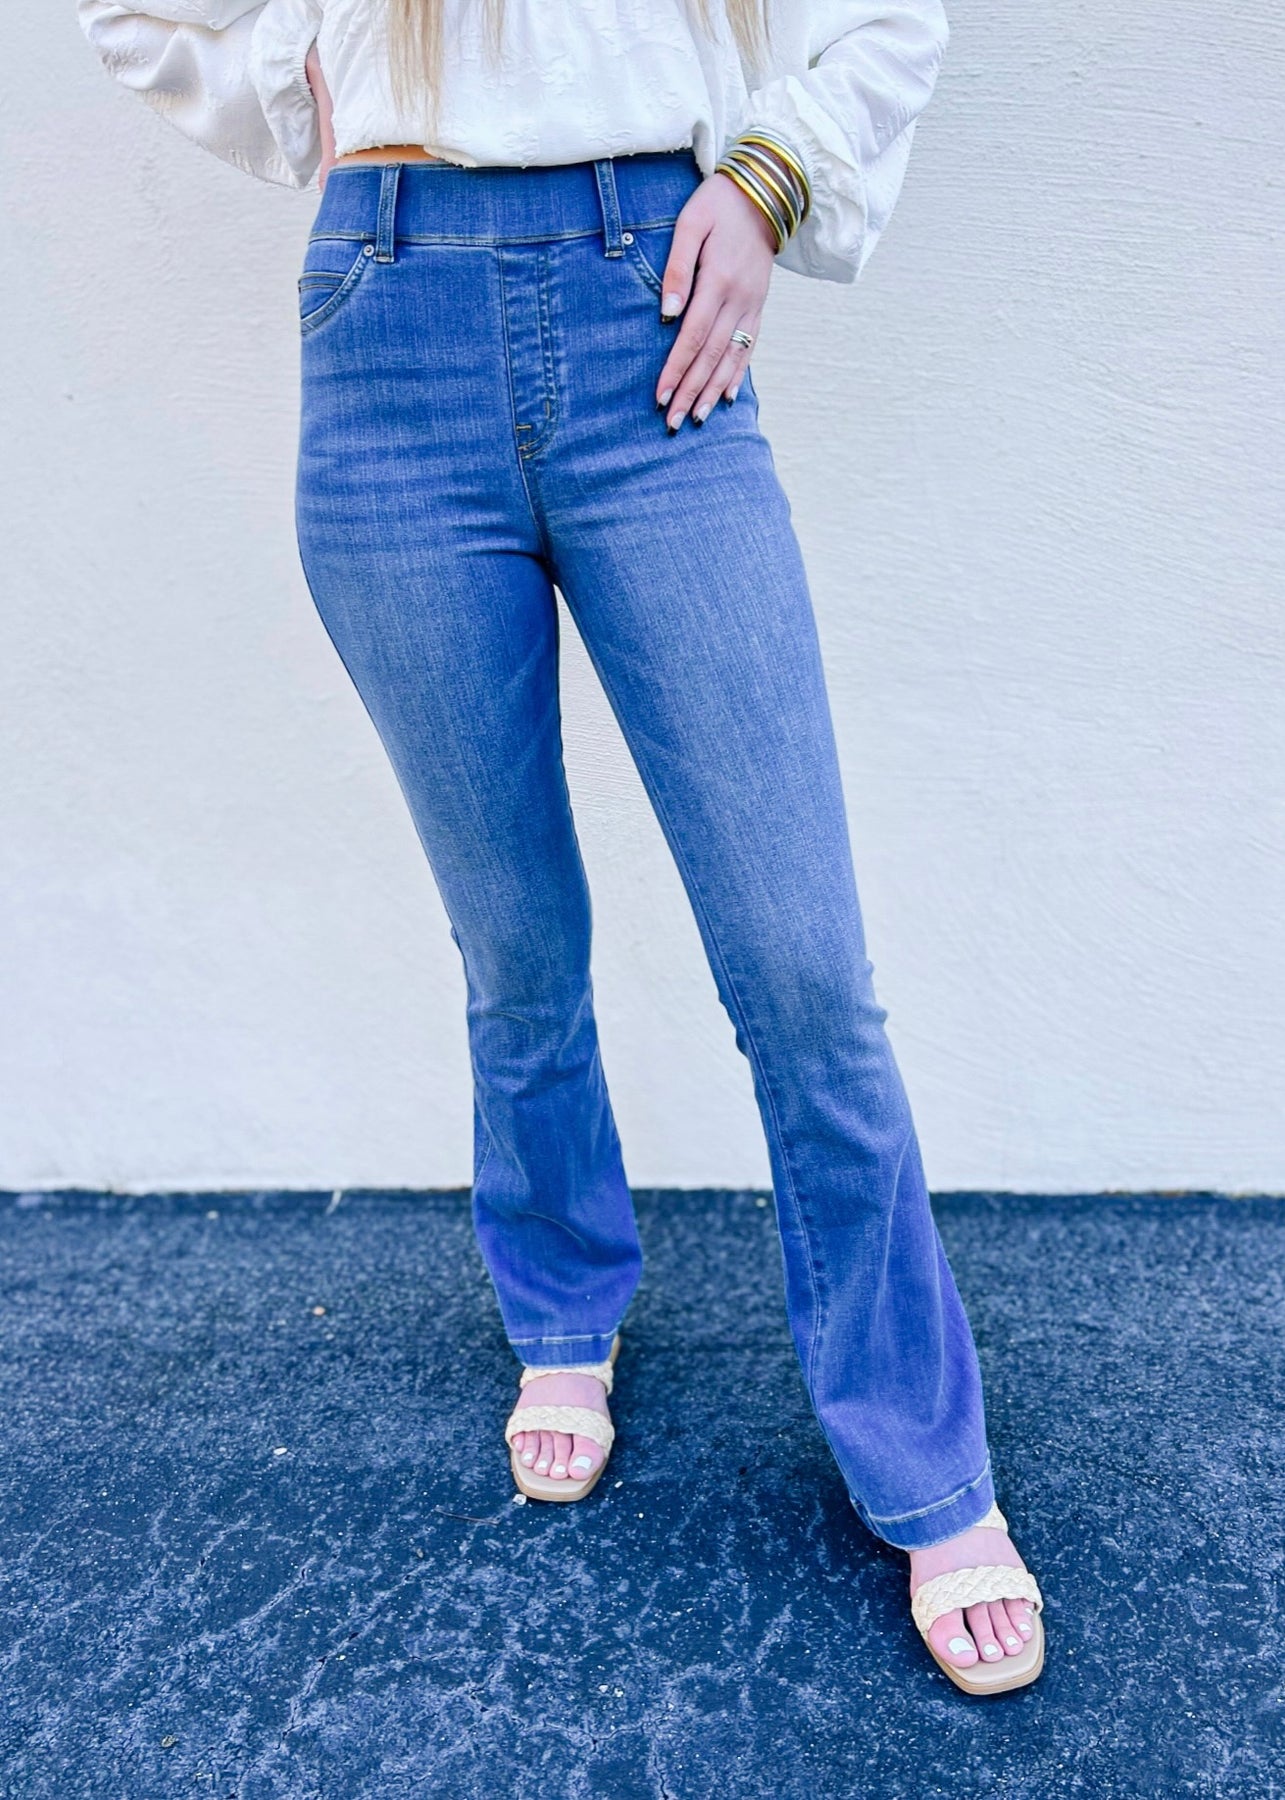 Spanx High-Rise Flared Stretch-Denim Jeans